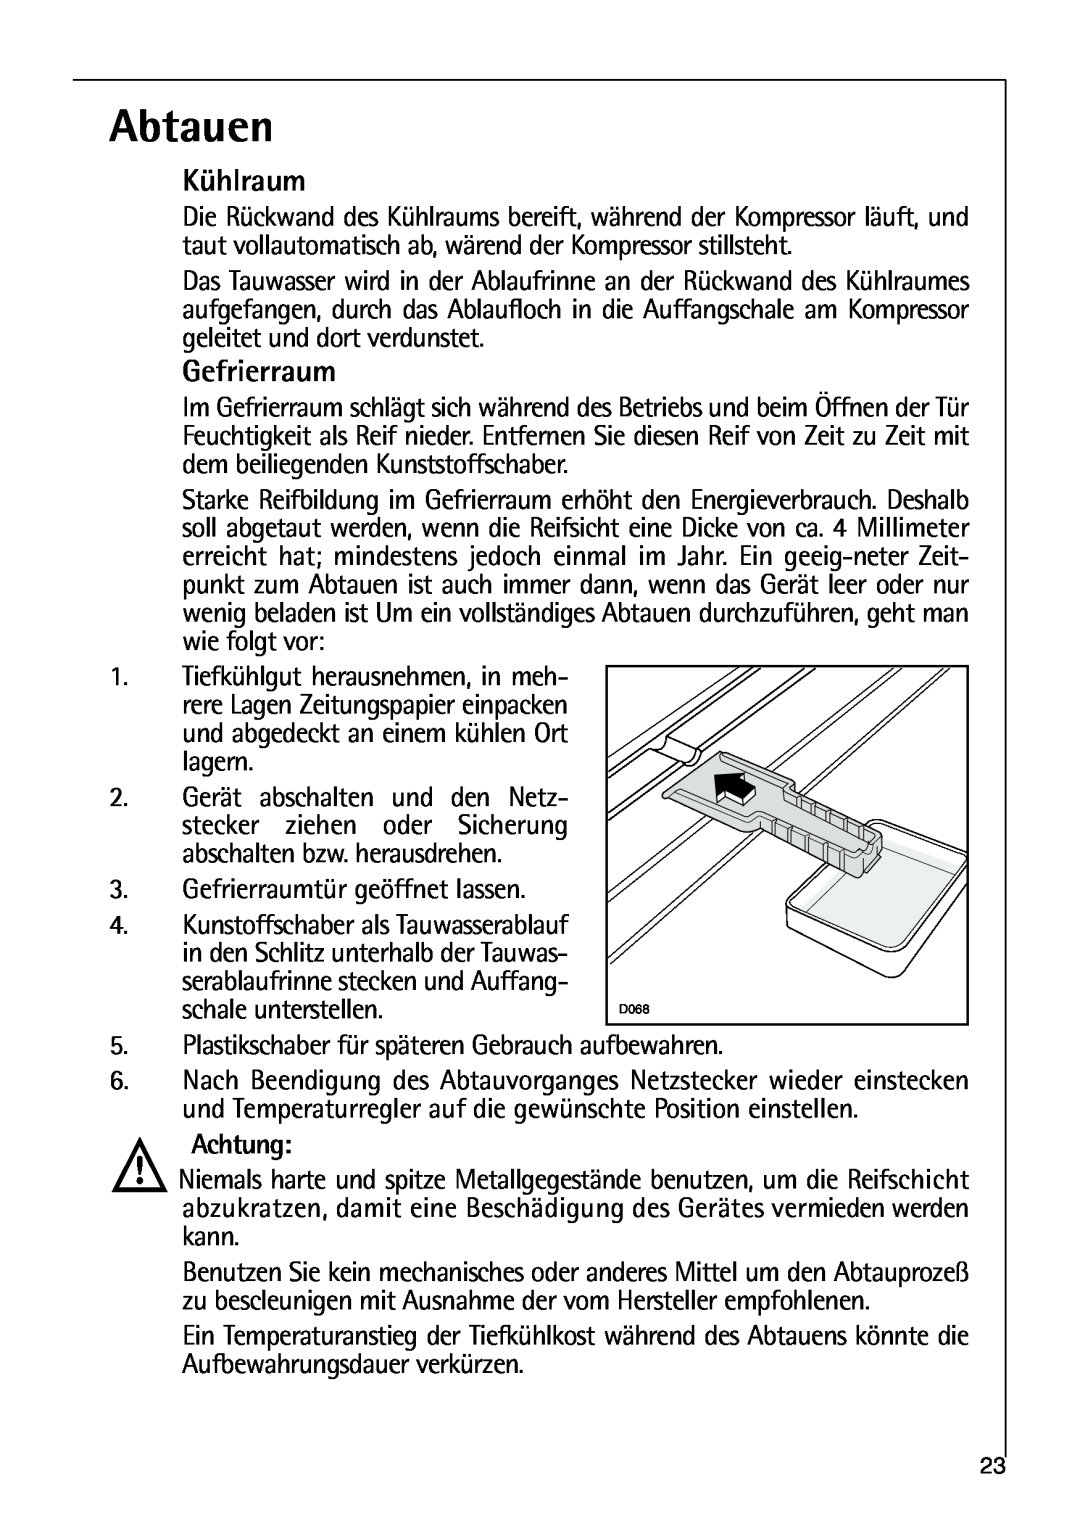 AEG 80318-5 KG user manual Abtauen, Kühlraum, Gefrierraum 